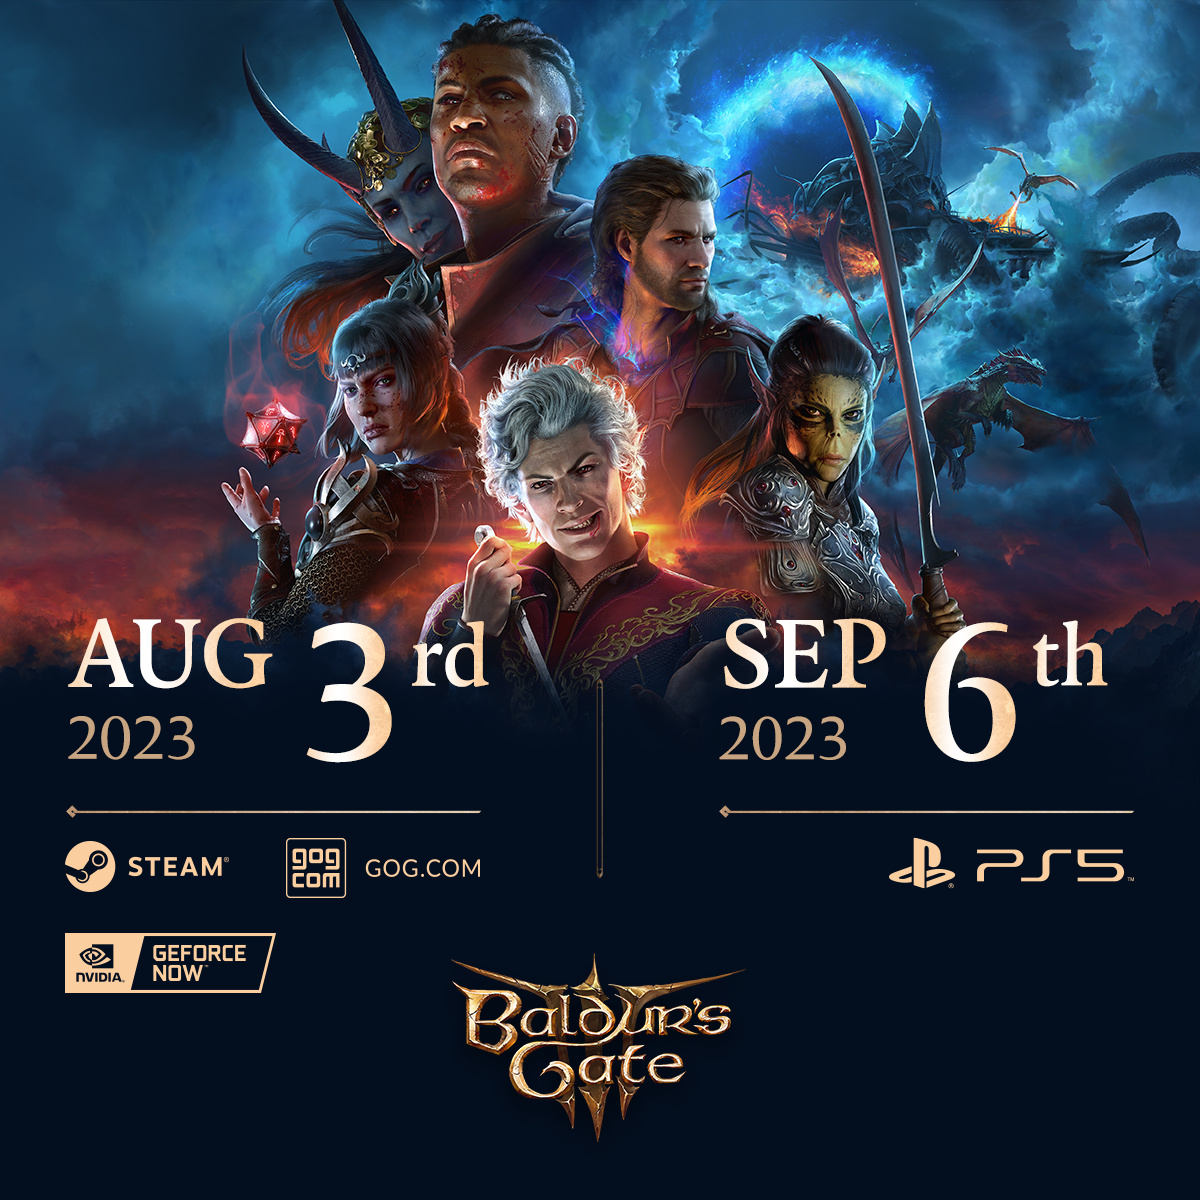 date di rilascio delle versioni PC e PS5 di Baldur's Gate 3